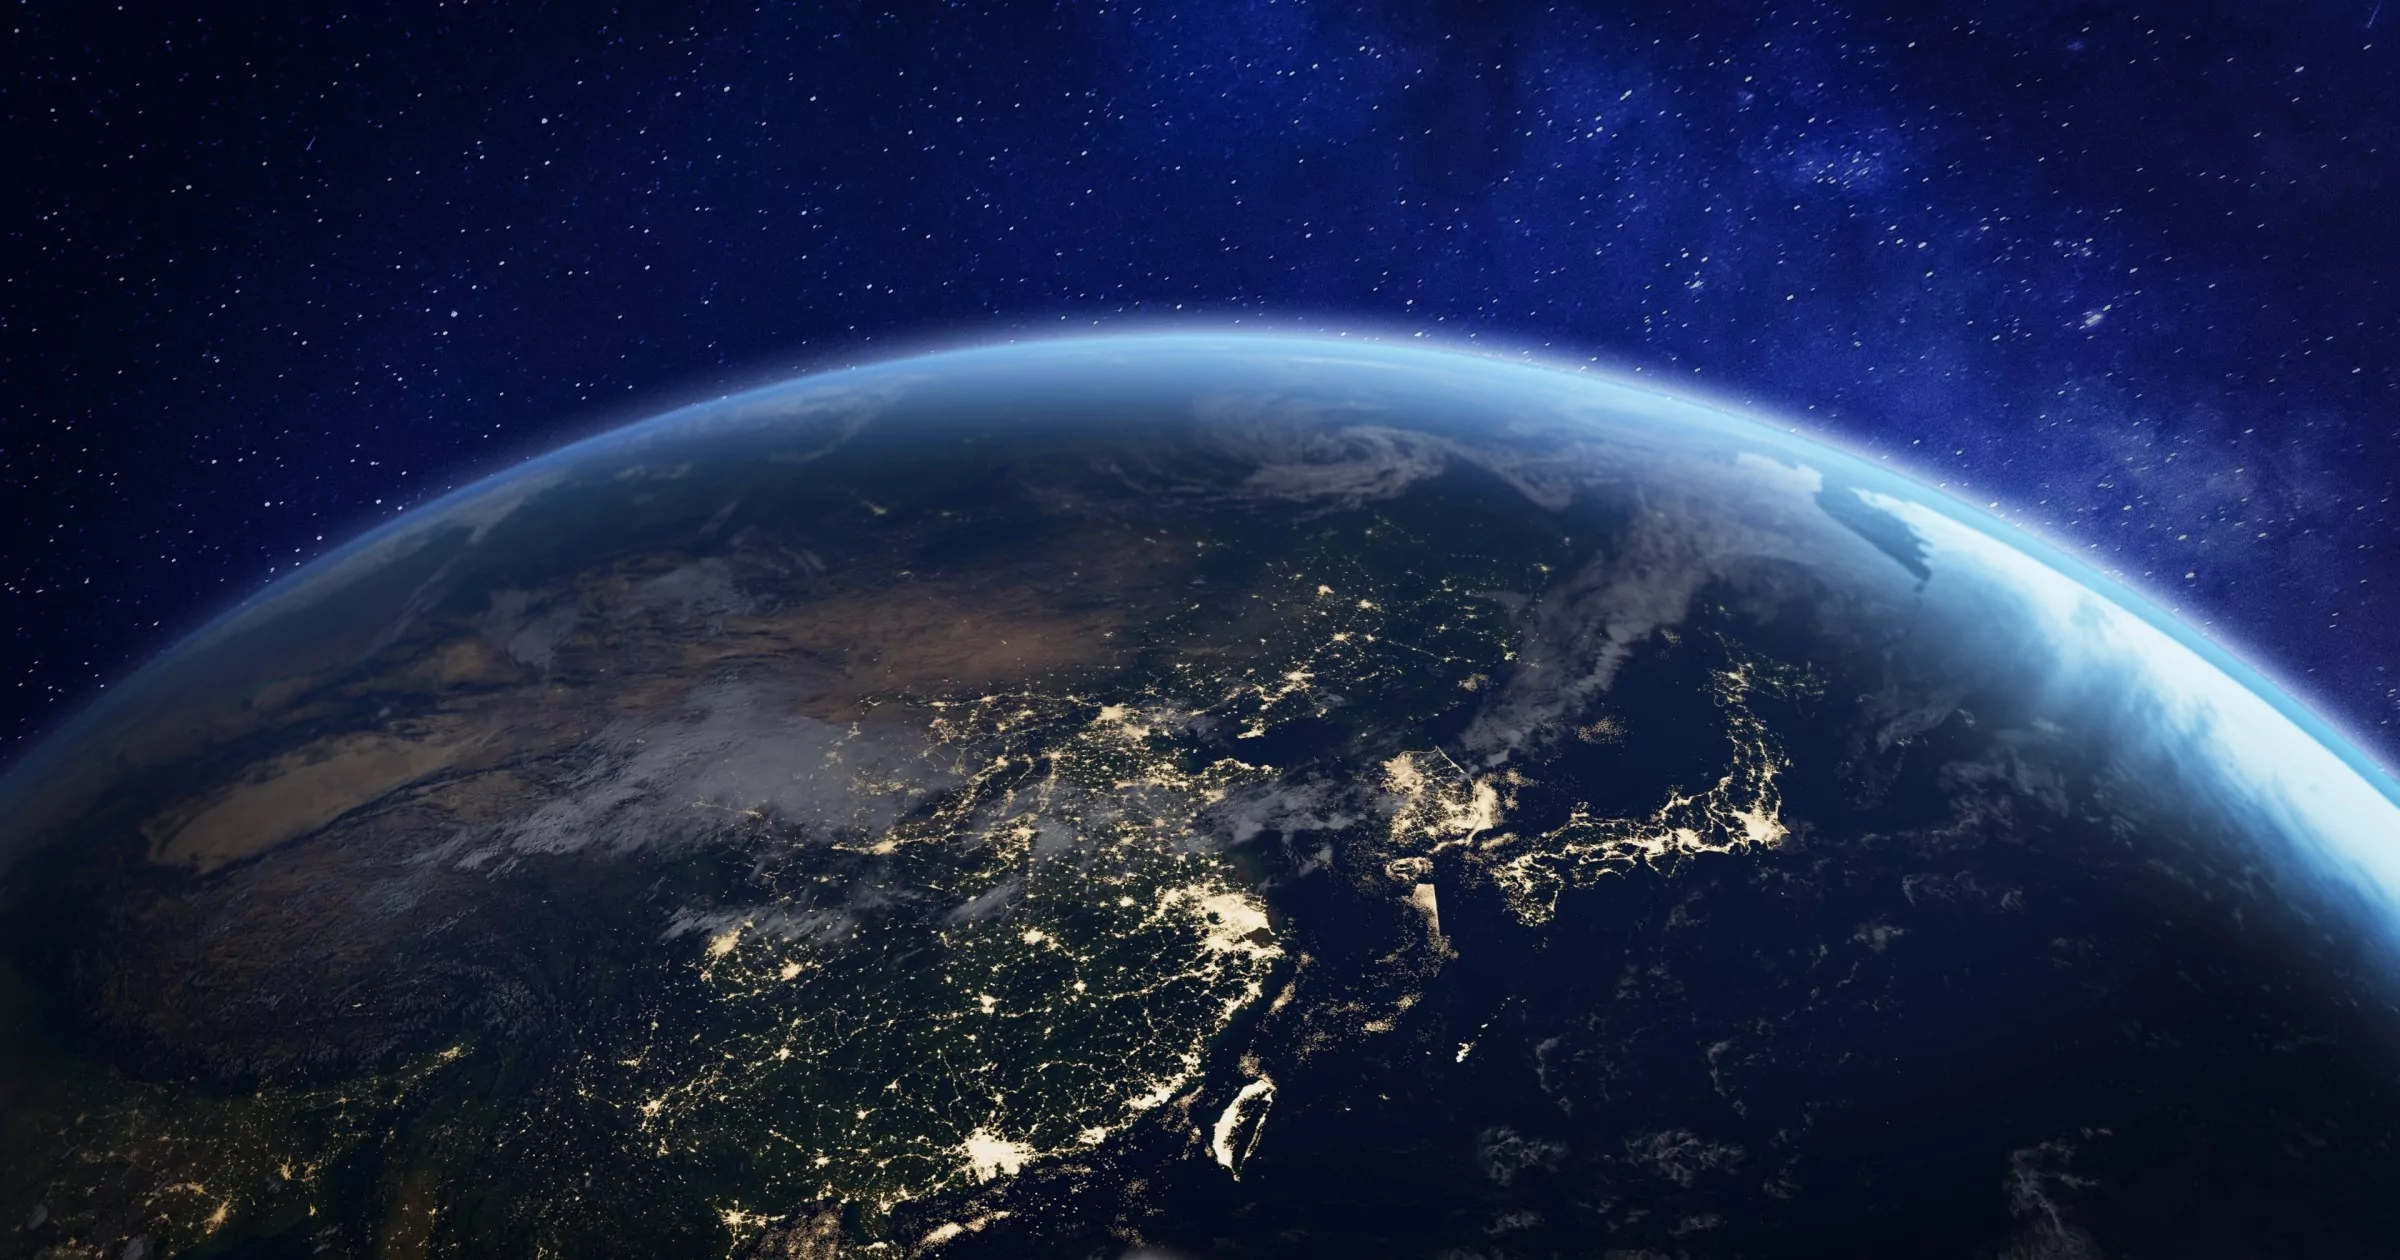 Châu Á về đêm từ không gian với ánh đèn thành phố cho thấy hoạt động của con người ở Trung Quốc, Nhật Bản, Hàn Quốc, Đài Loan và các quốc gia khác, hình ảnh 3D của hành tinh Trái đất, các yếu tố từ NASA